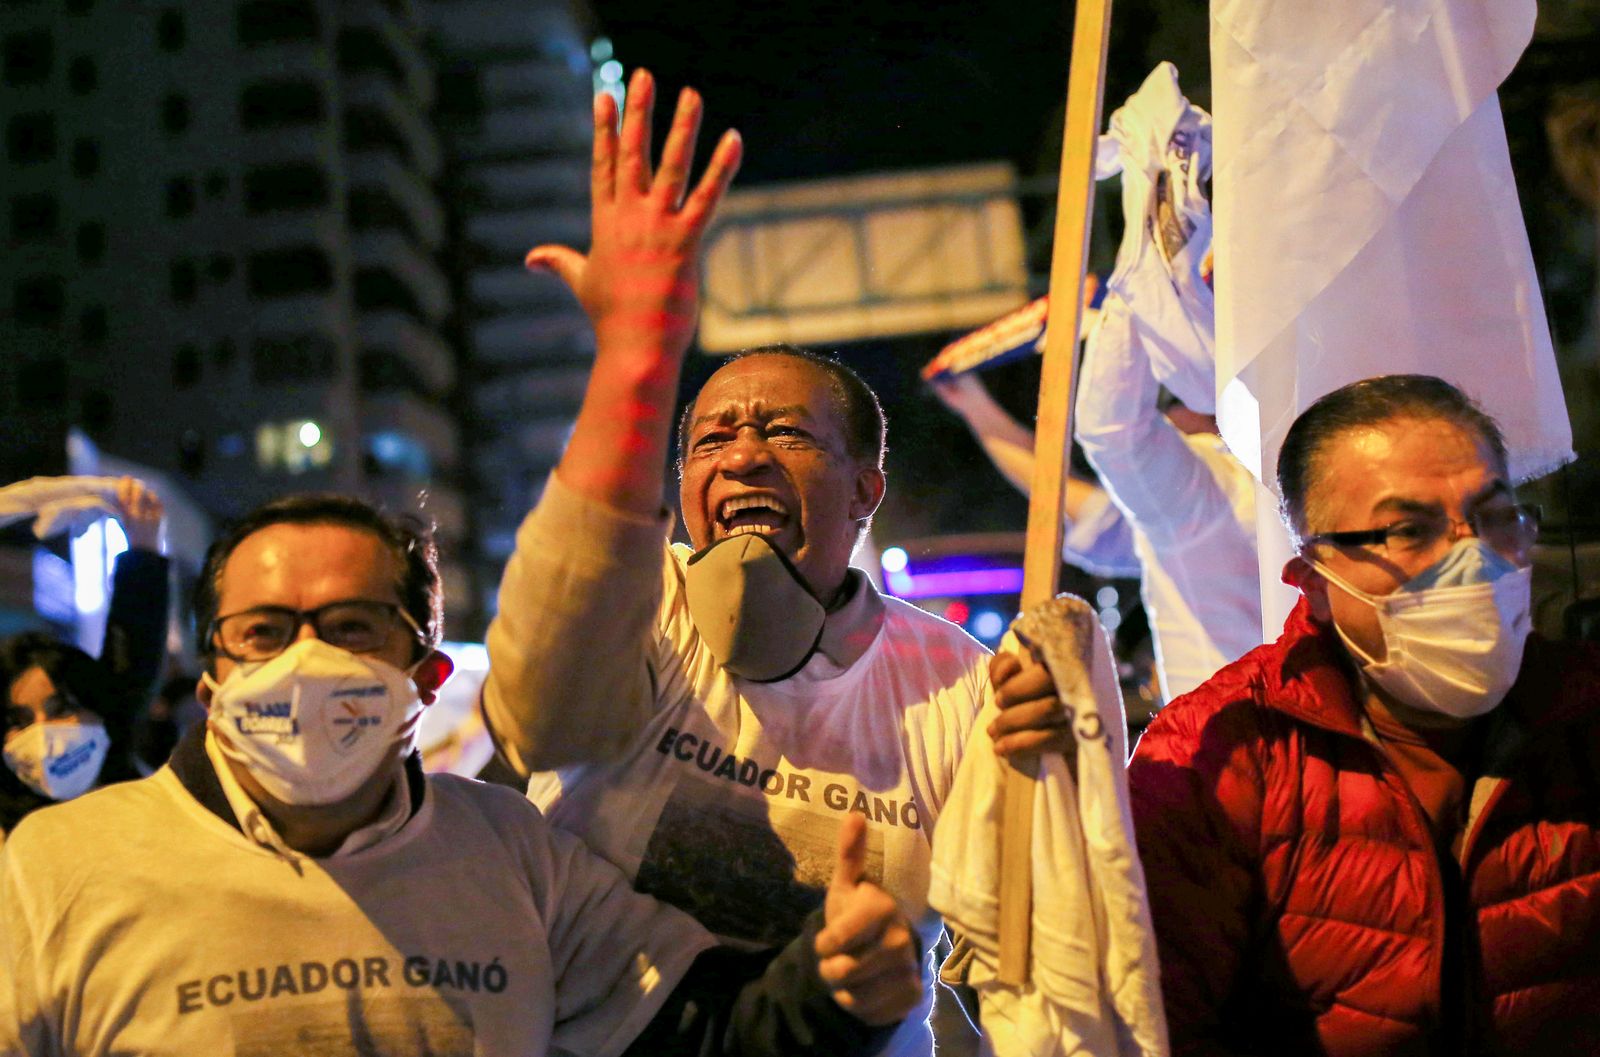 مؤيّدون لغييرمو لاسو في كيتو قبل إعلان فوزه في انتخابات الرئاسة بالإكوادور - 11 أبريل 2021 - REUTERS